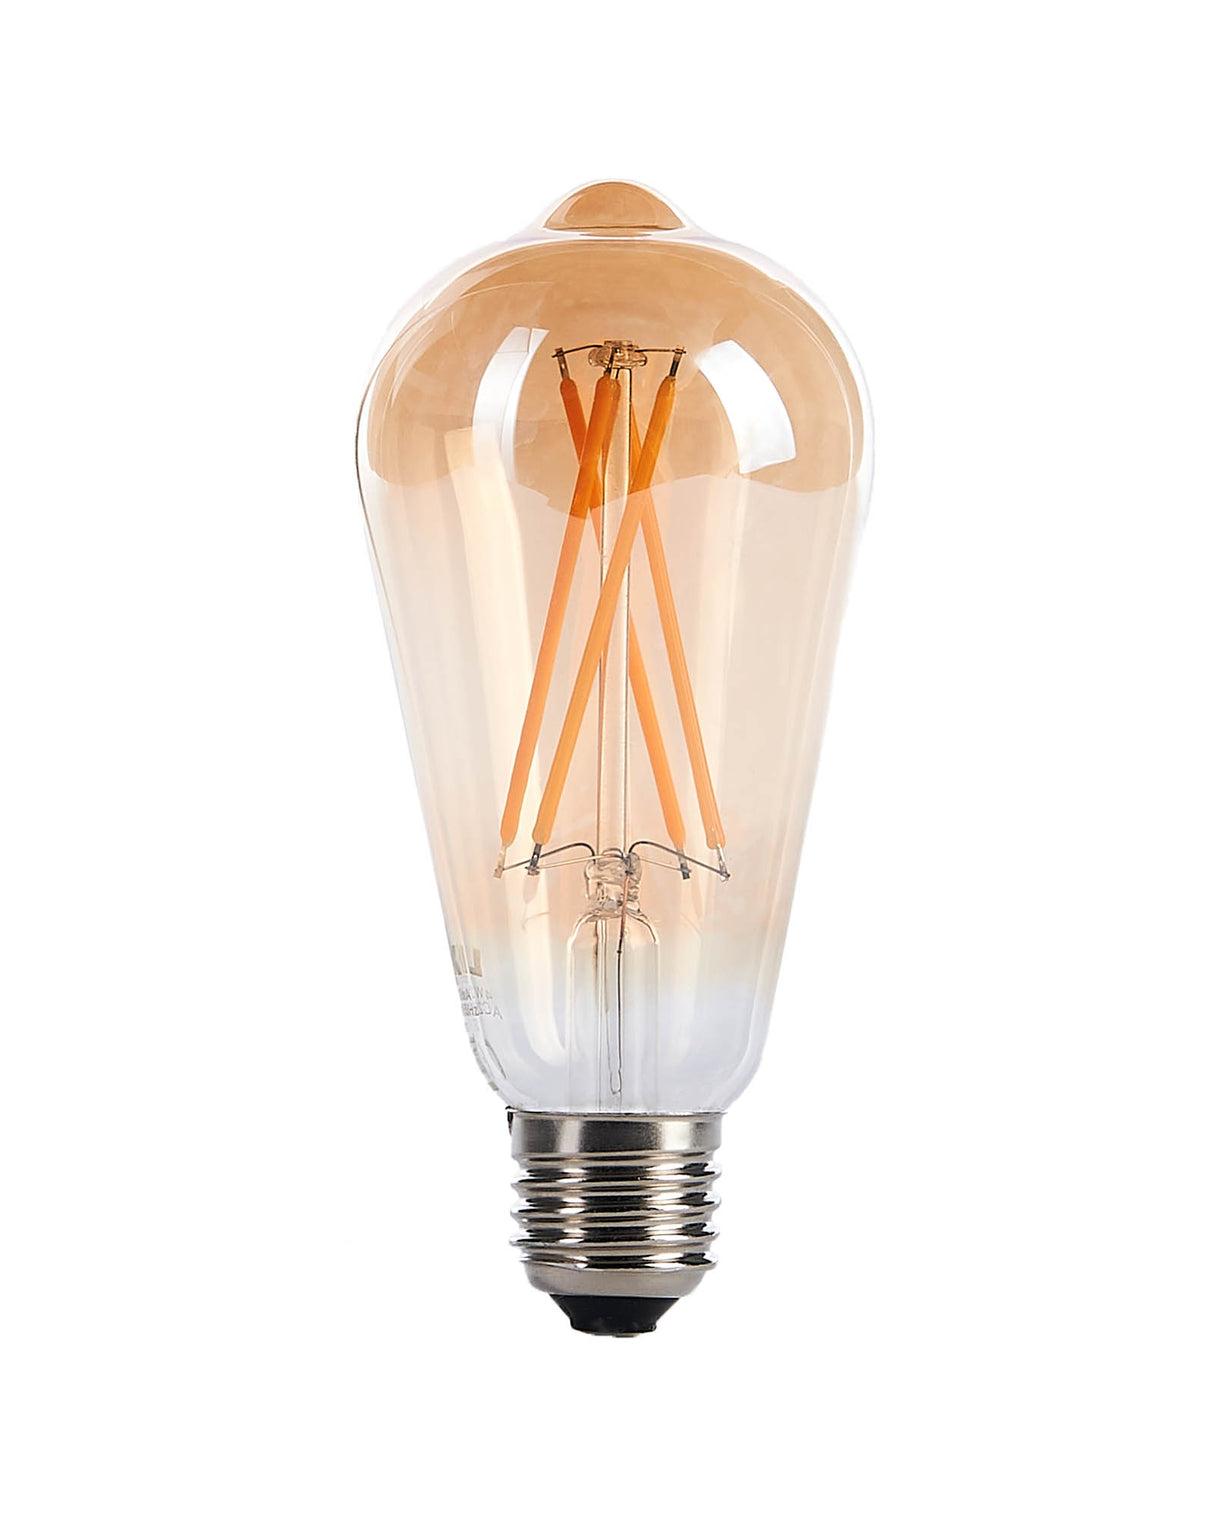 LINK FESTOON 4W E27 Dimmable Teardrop Filament LED Bulb, Warm White